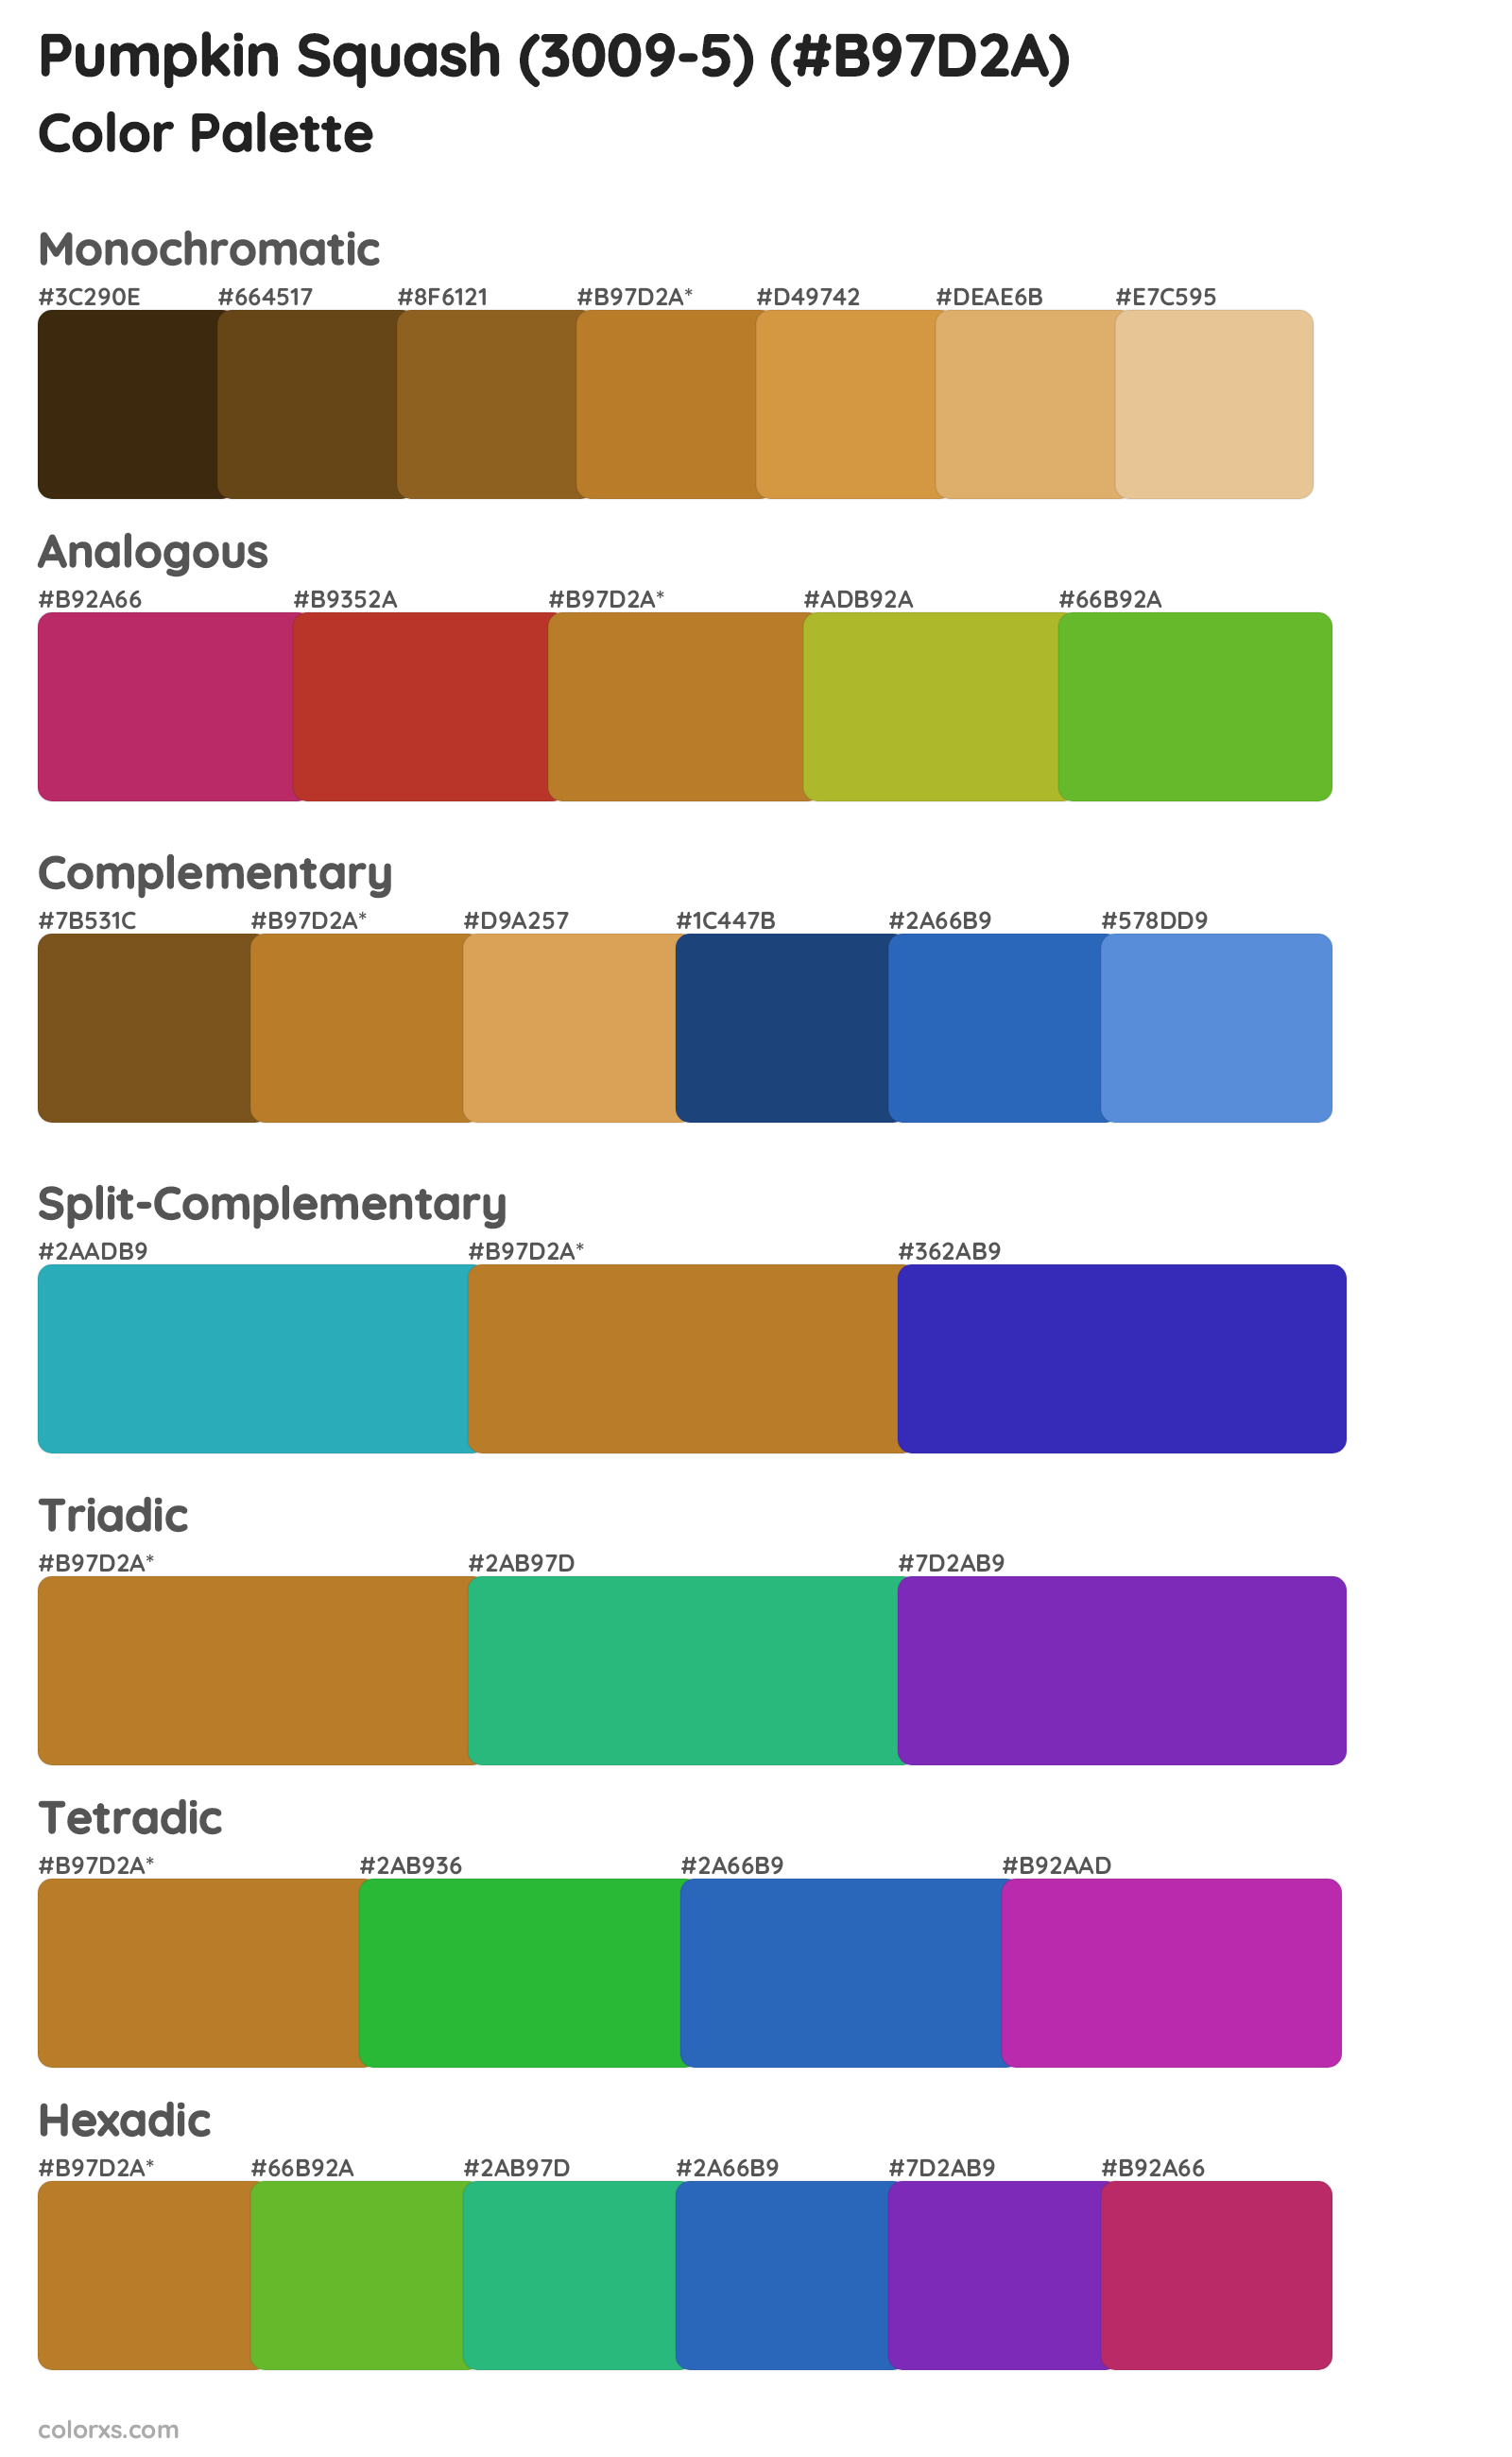 Pumpkin Squash (3009-5) Color Scheme Palettes